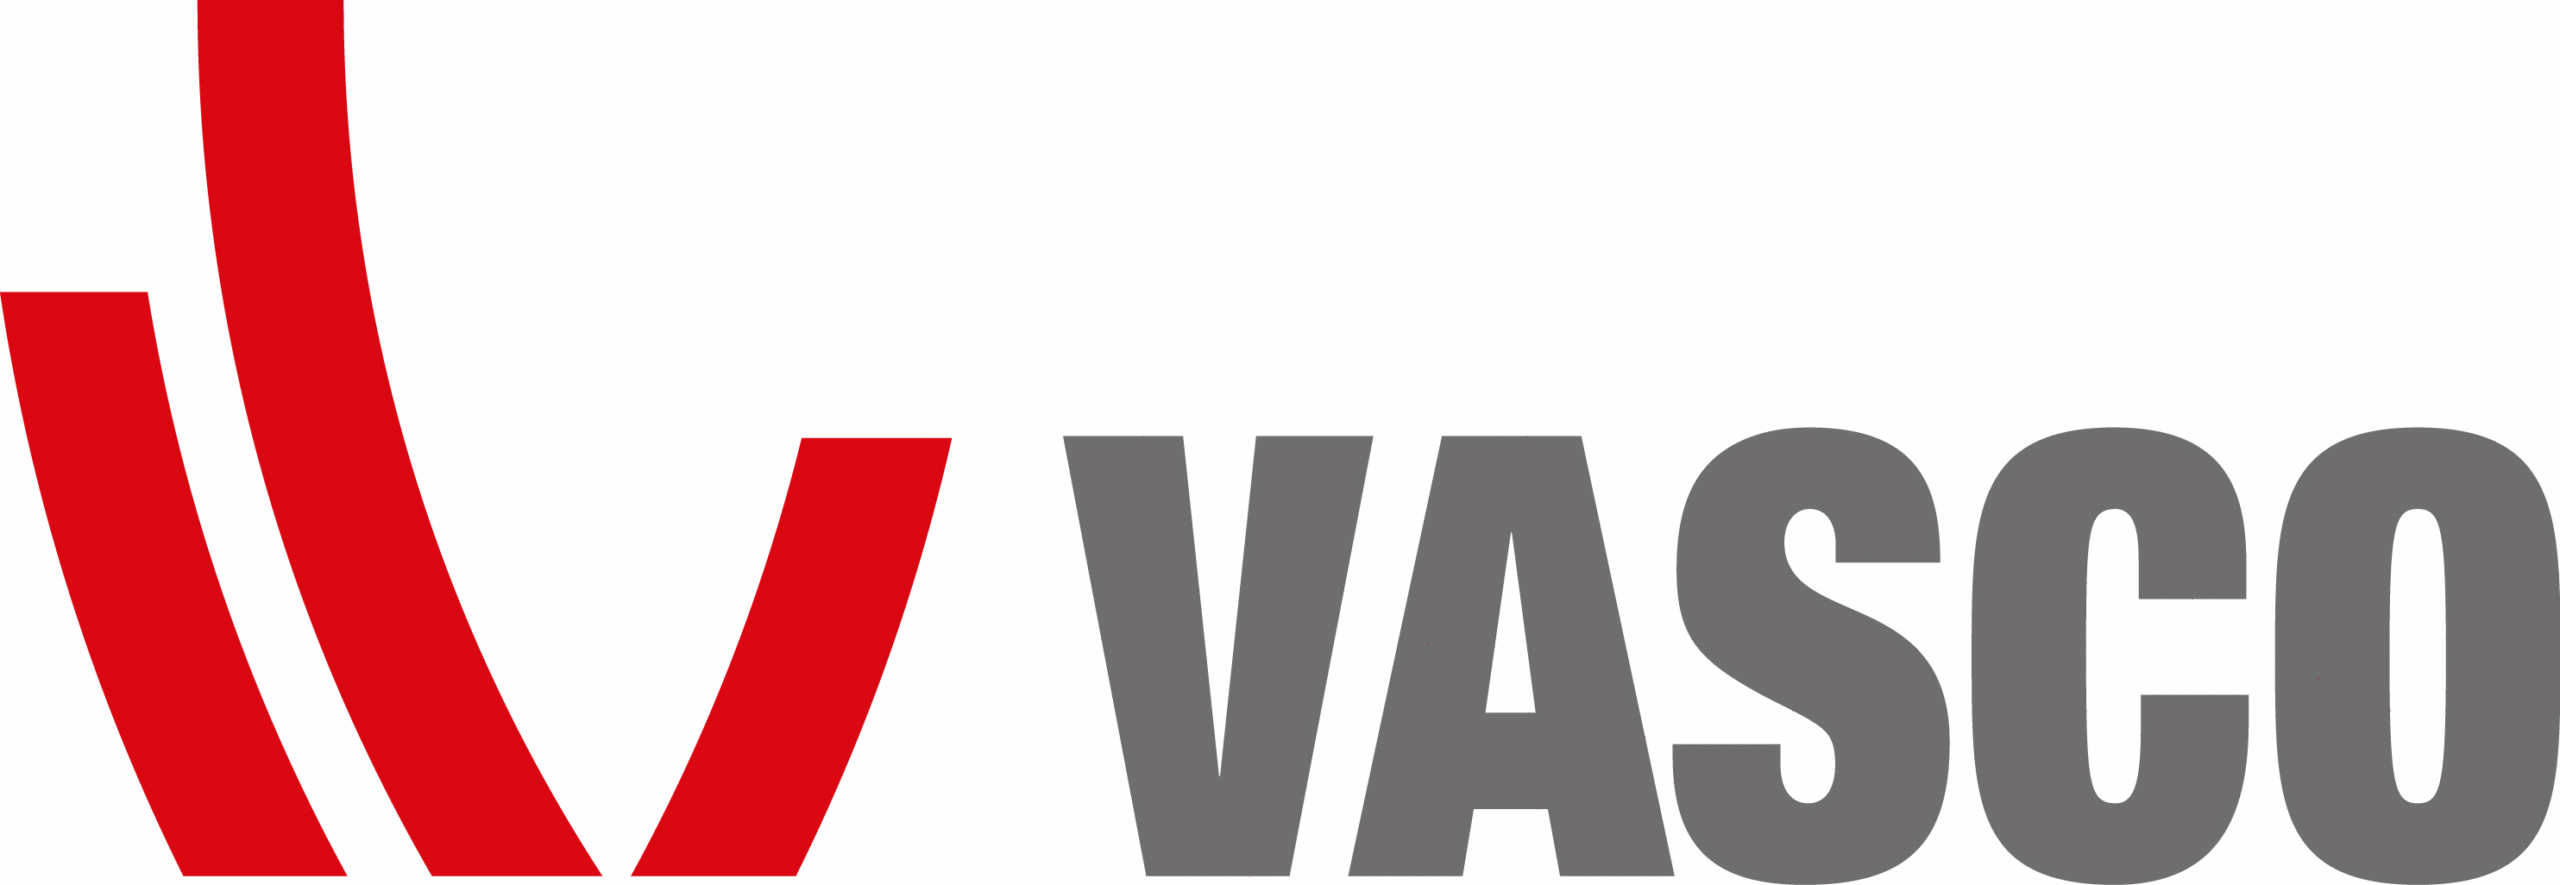 VASCO-678f719-log1